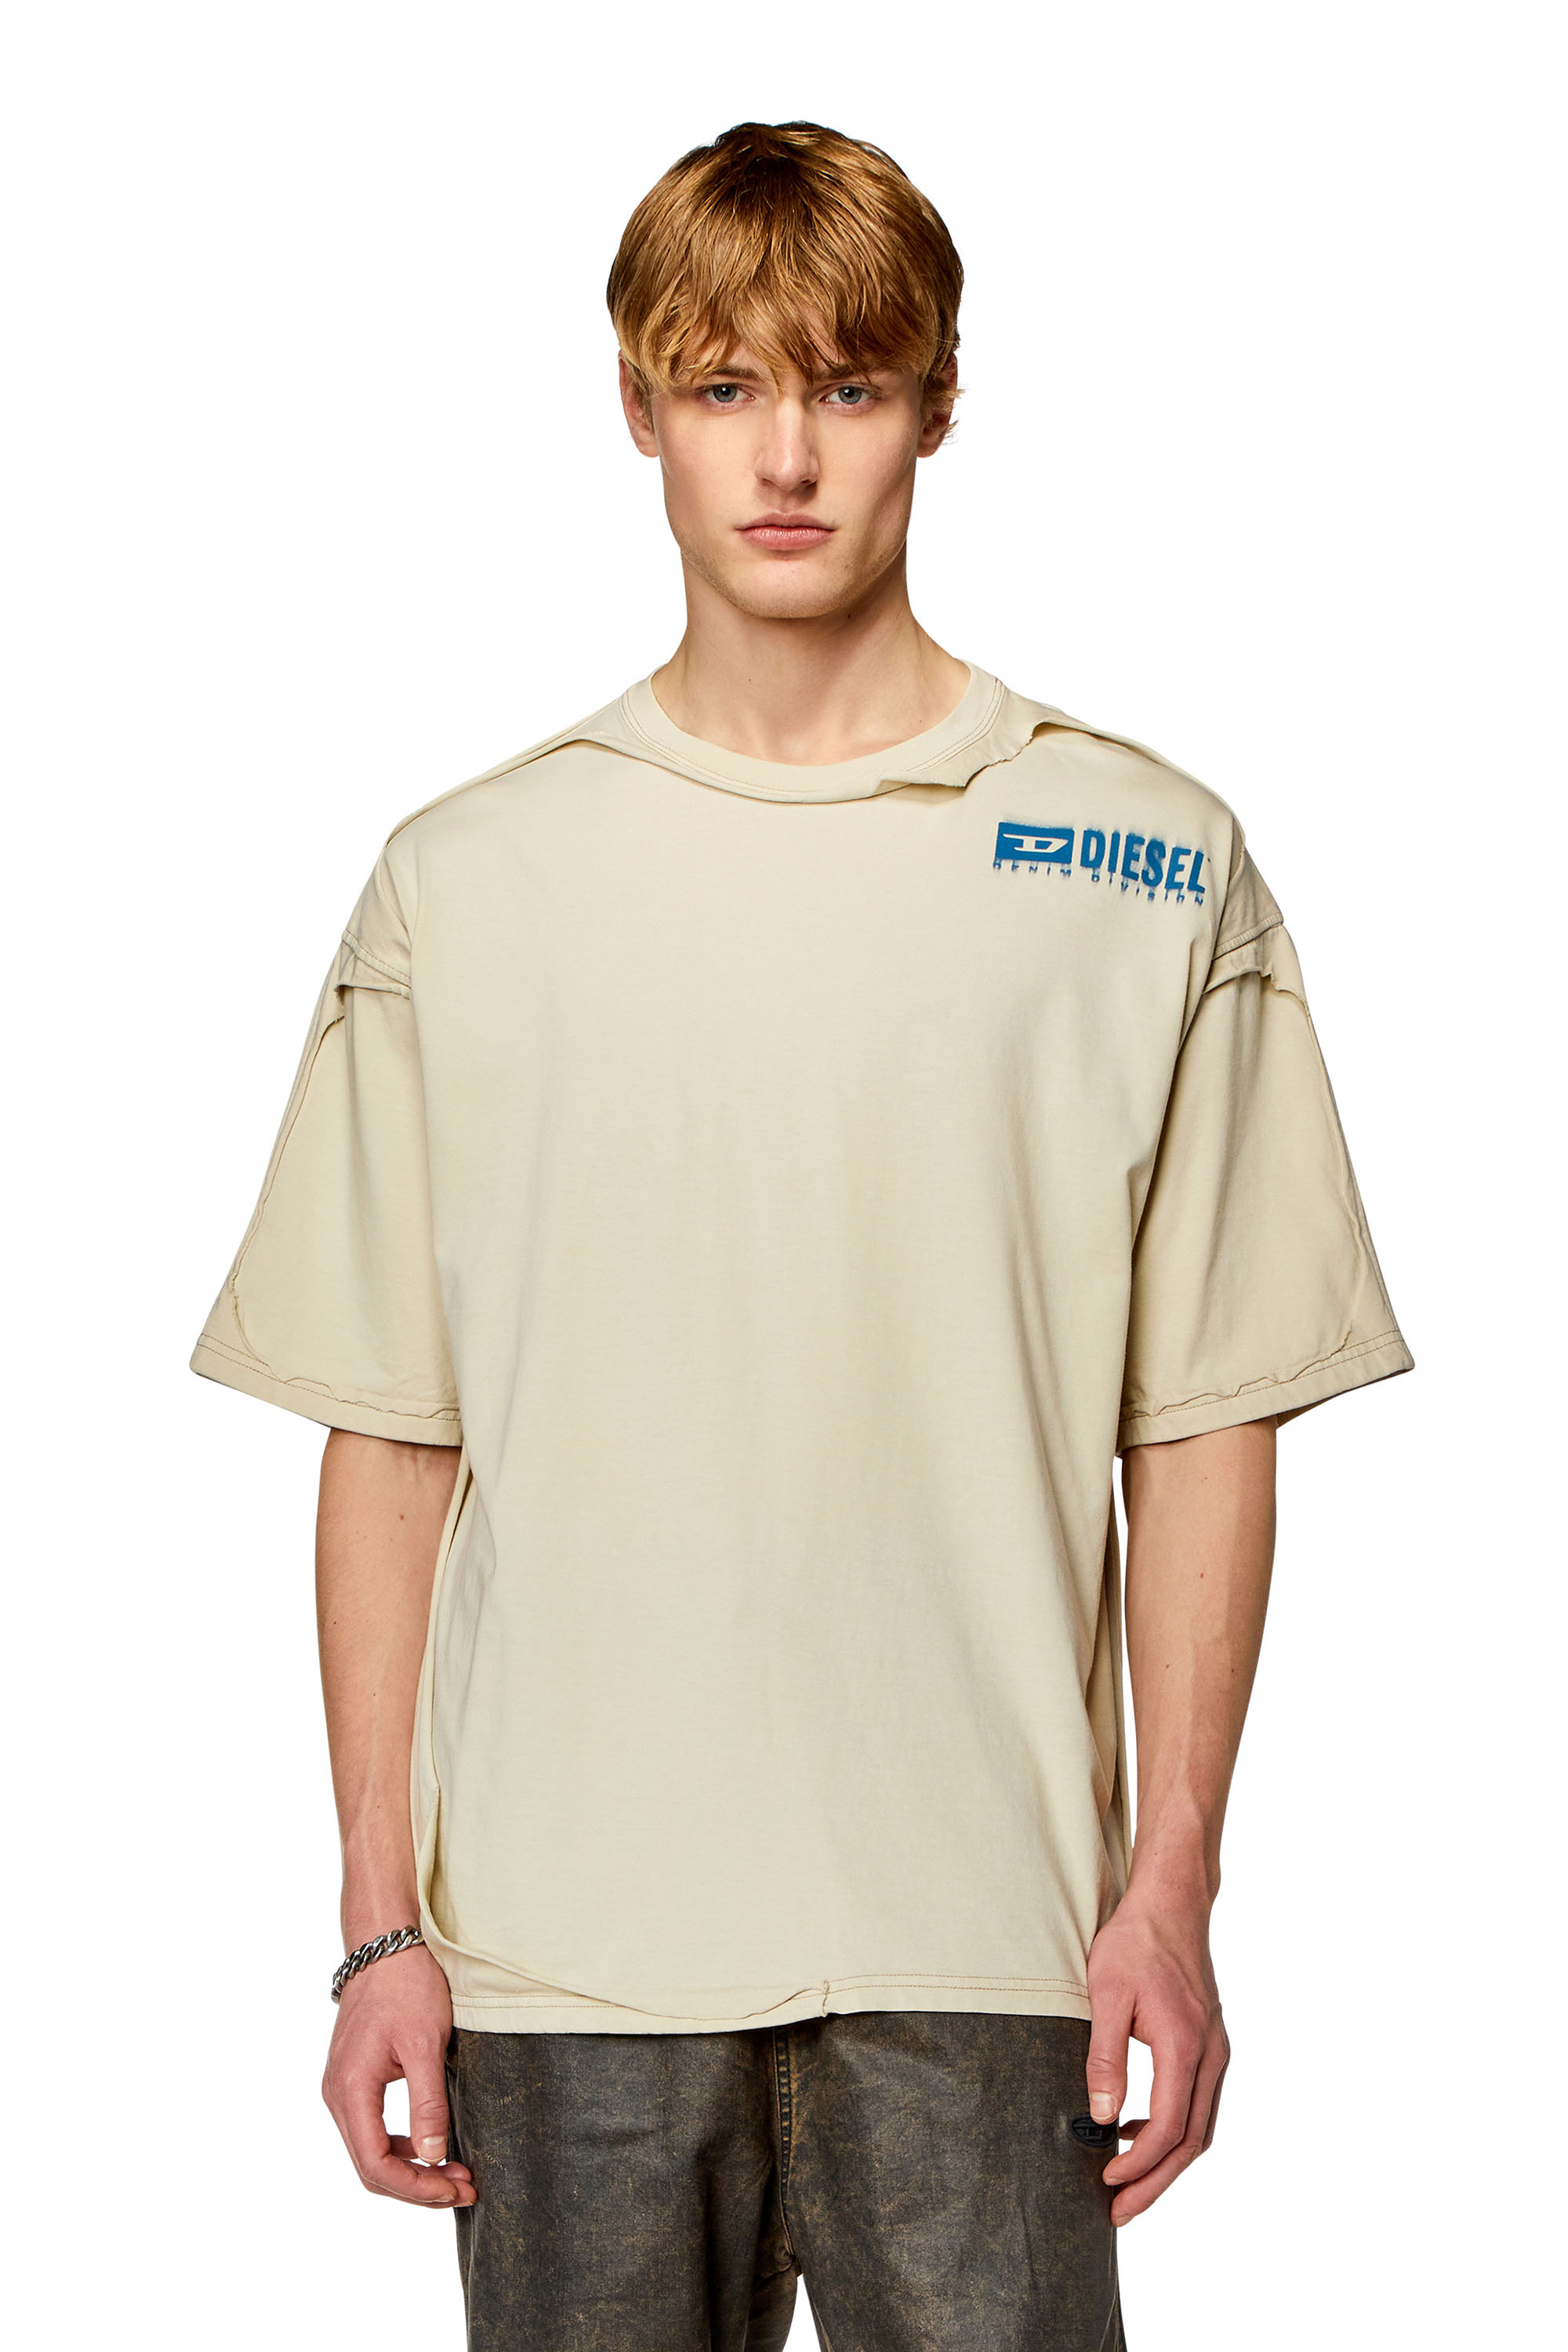 Diesel - Camiseta con efecto roto despegado - Camisetas - Hombre - Beige